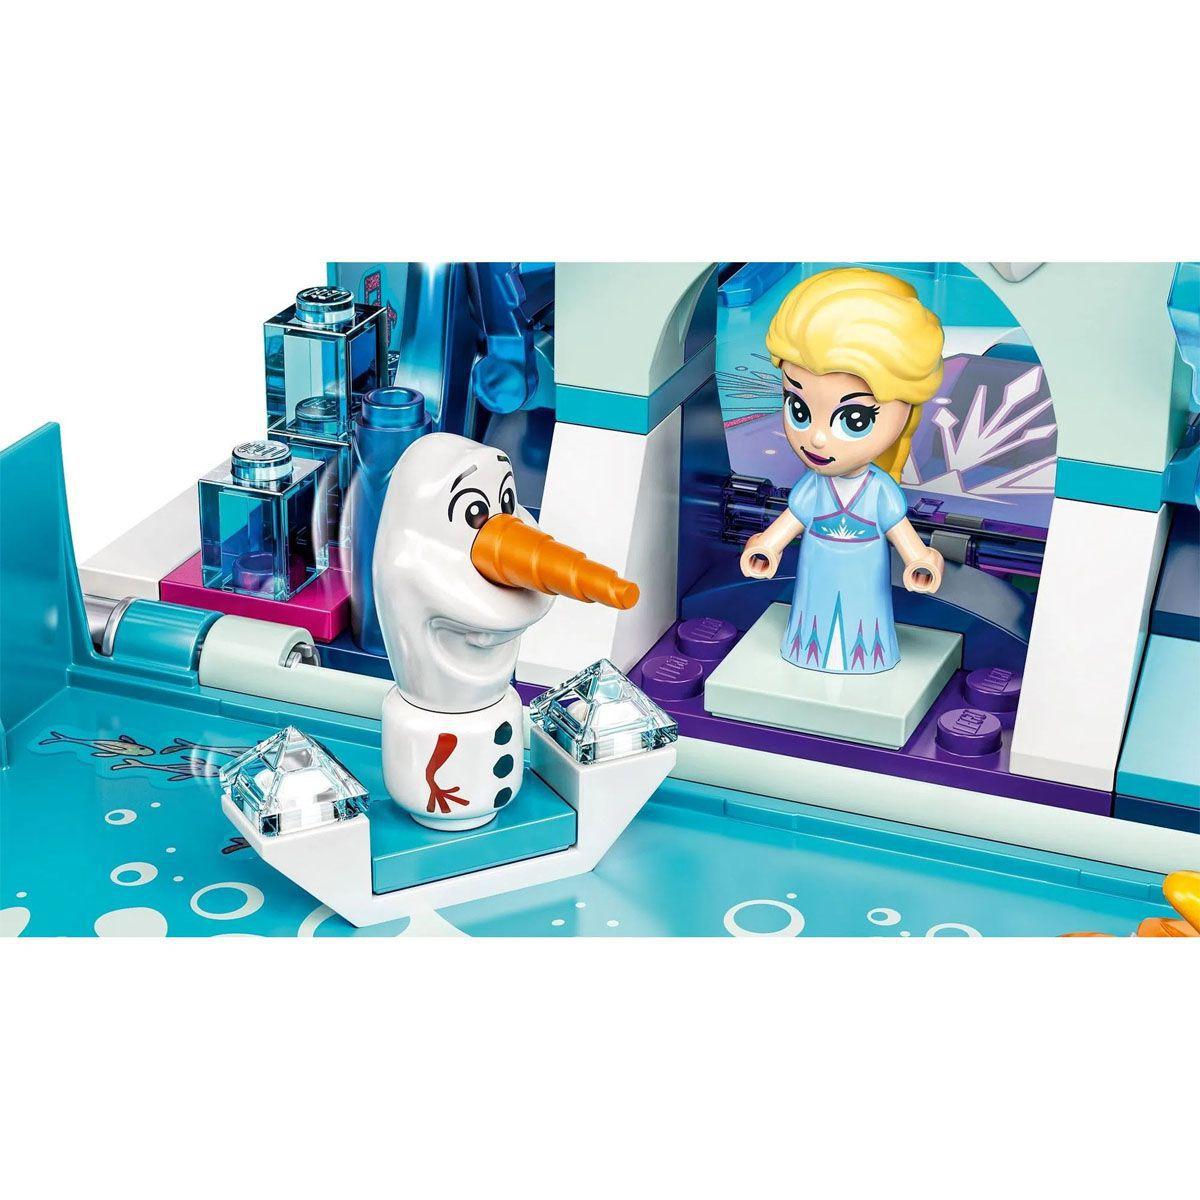 Lego Princesas Disney O Livro De Aventuras De Elsa E Nokk 125 Peças Brinquedos De Montar E 